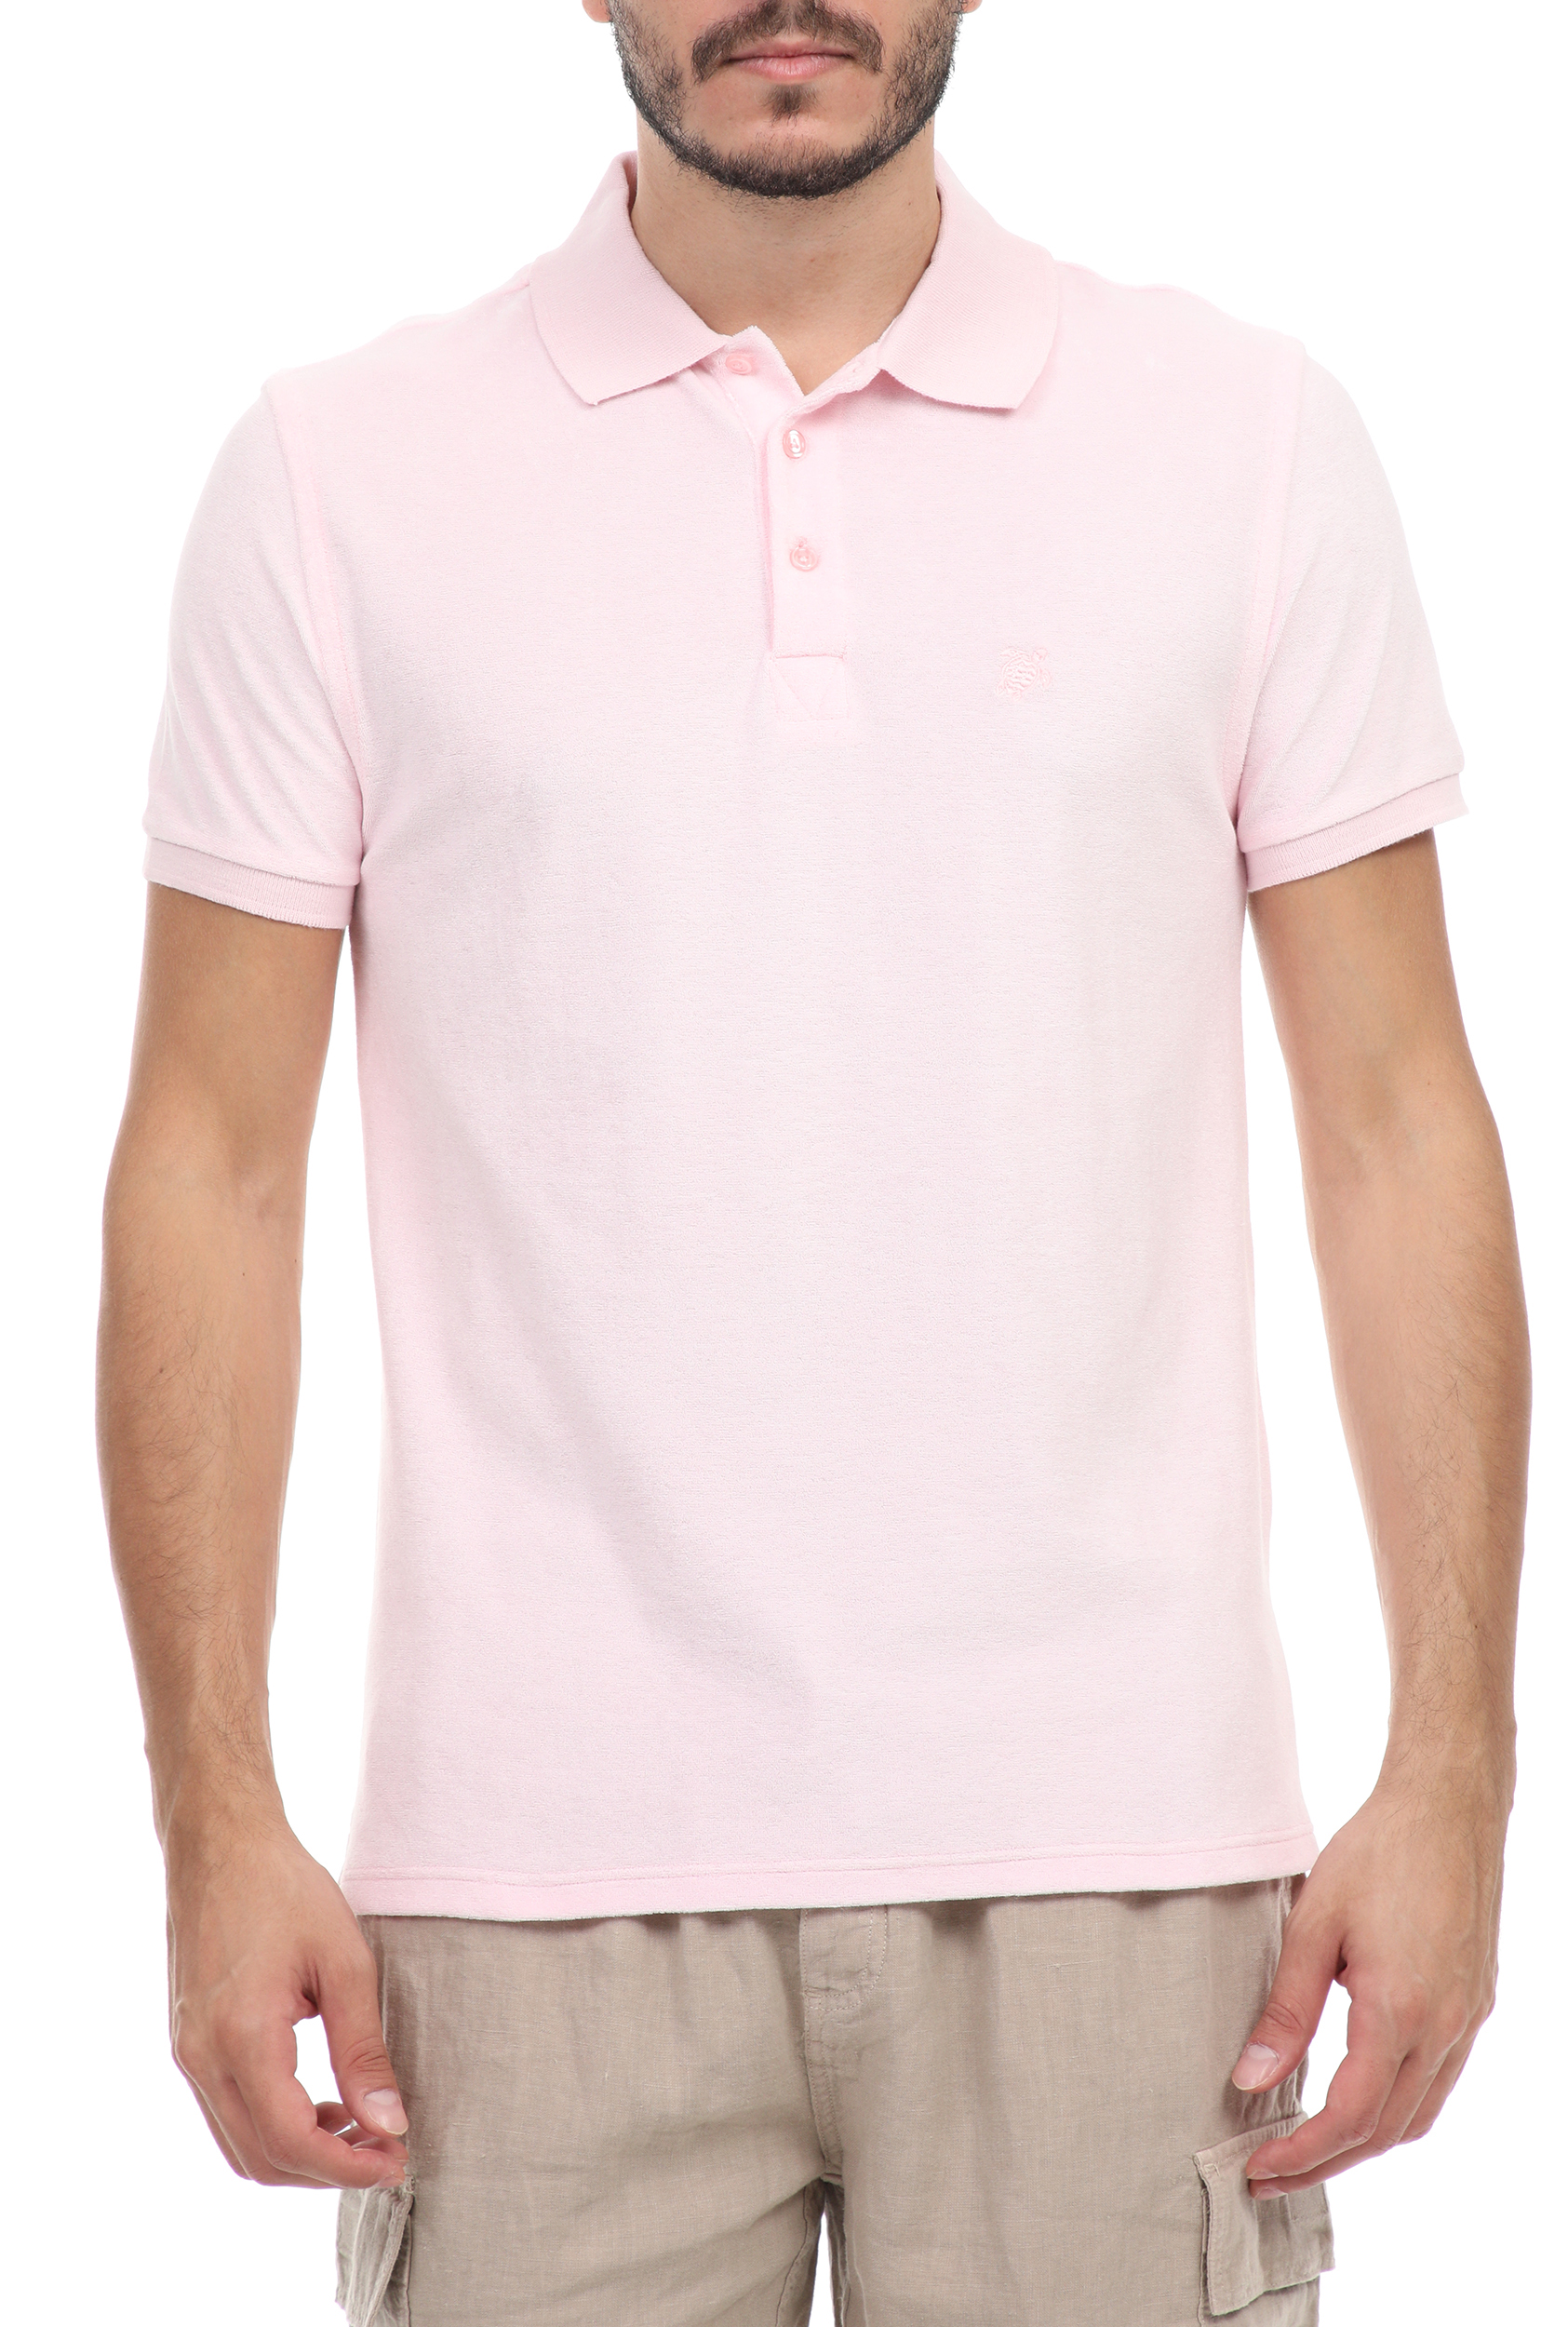 Ανδρικά/Ρούχα/Μπλούζες/Πόλο VILEBREQUIN - Ανδρική polo μπλούζα VILEBREQUIN PACIFIC ροζ